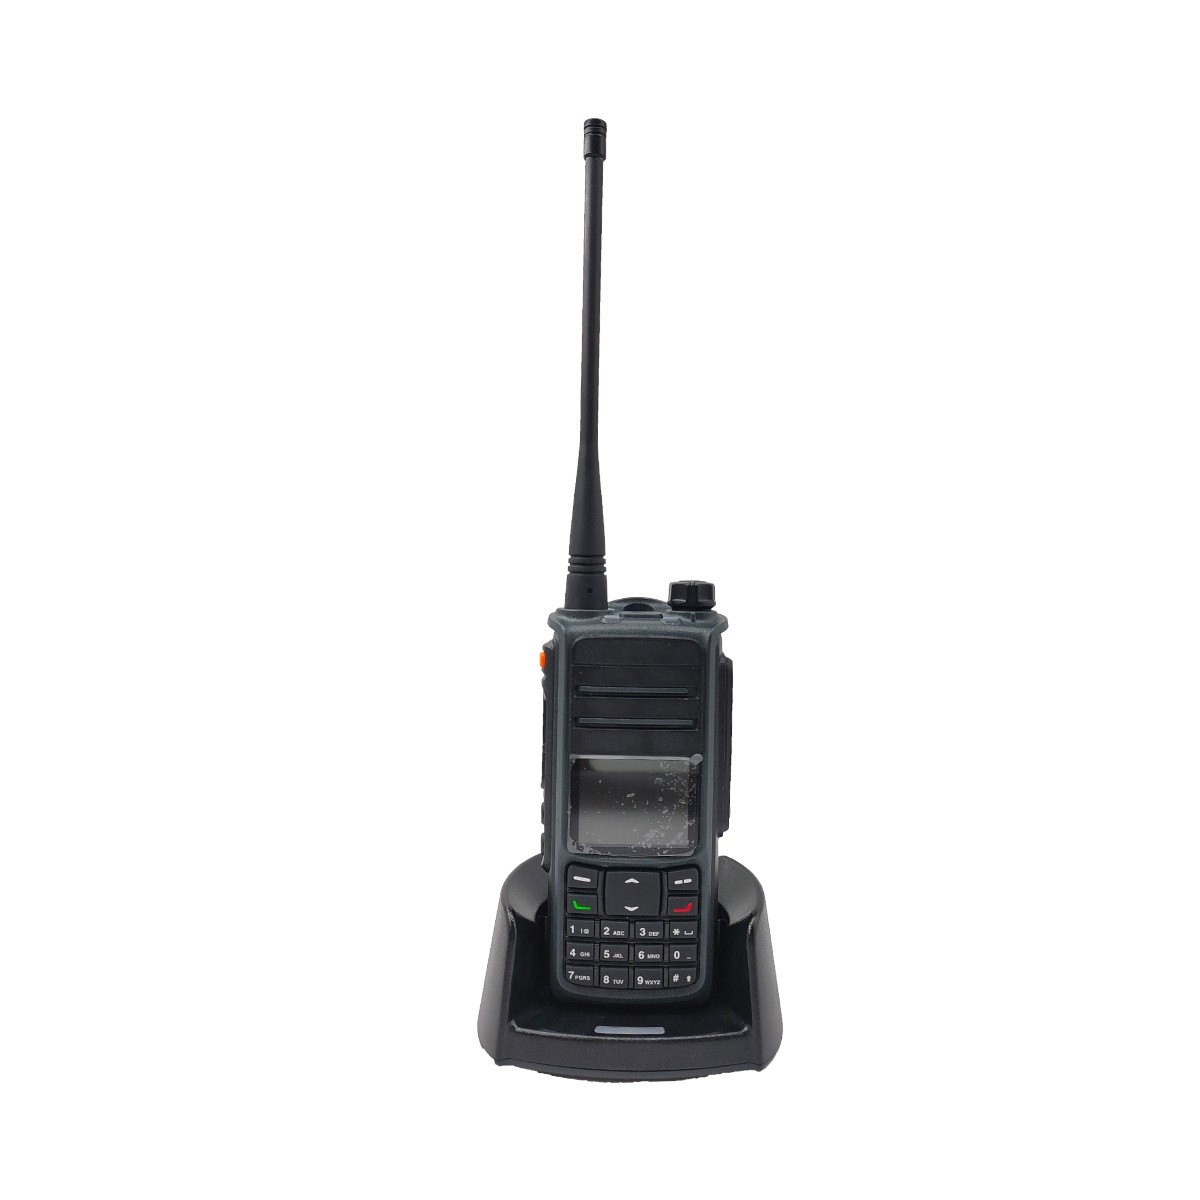 QYT numérique dmr analogique double mode gps talkie-walkie UV-D67H
